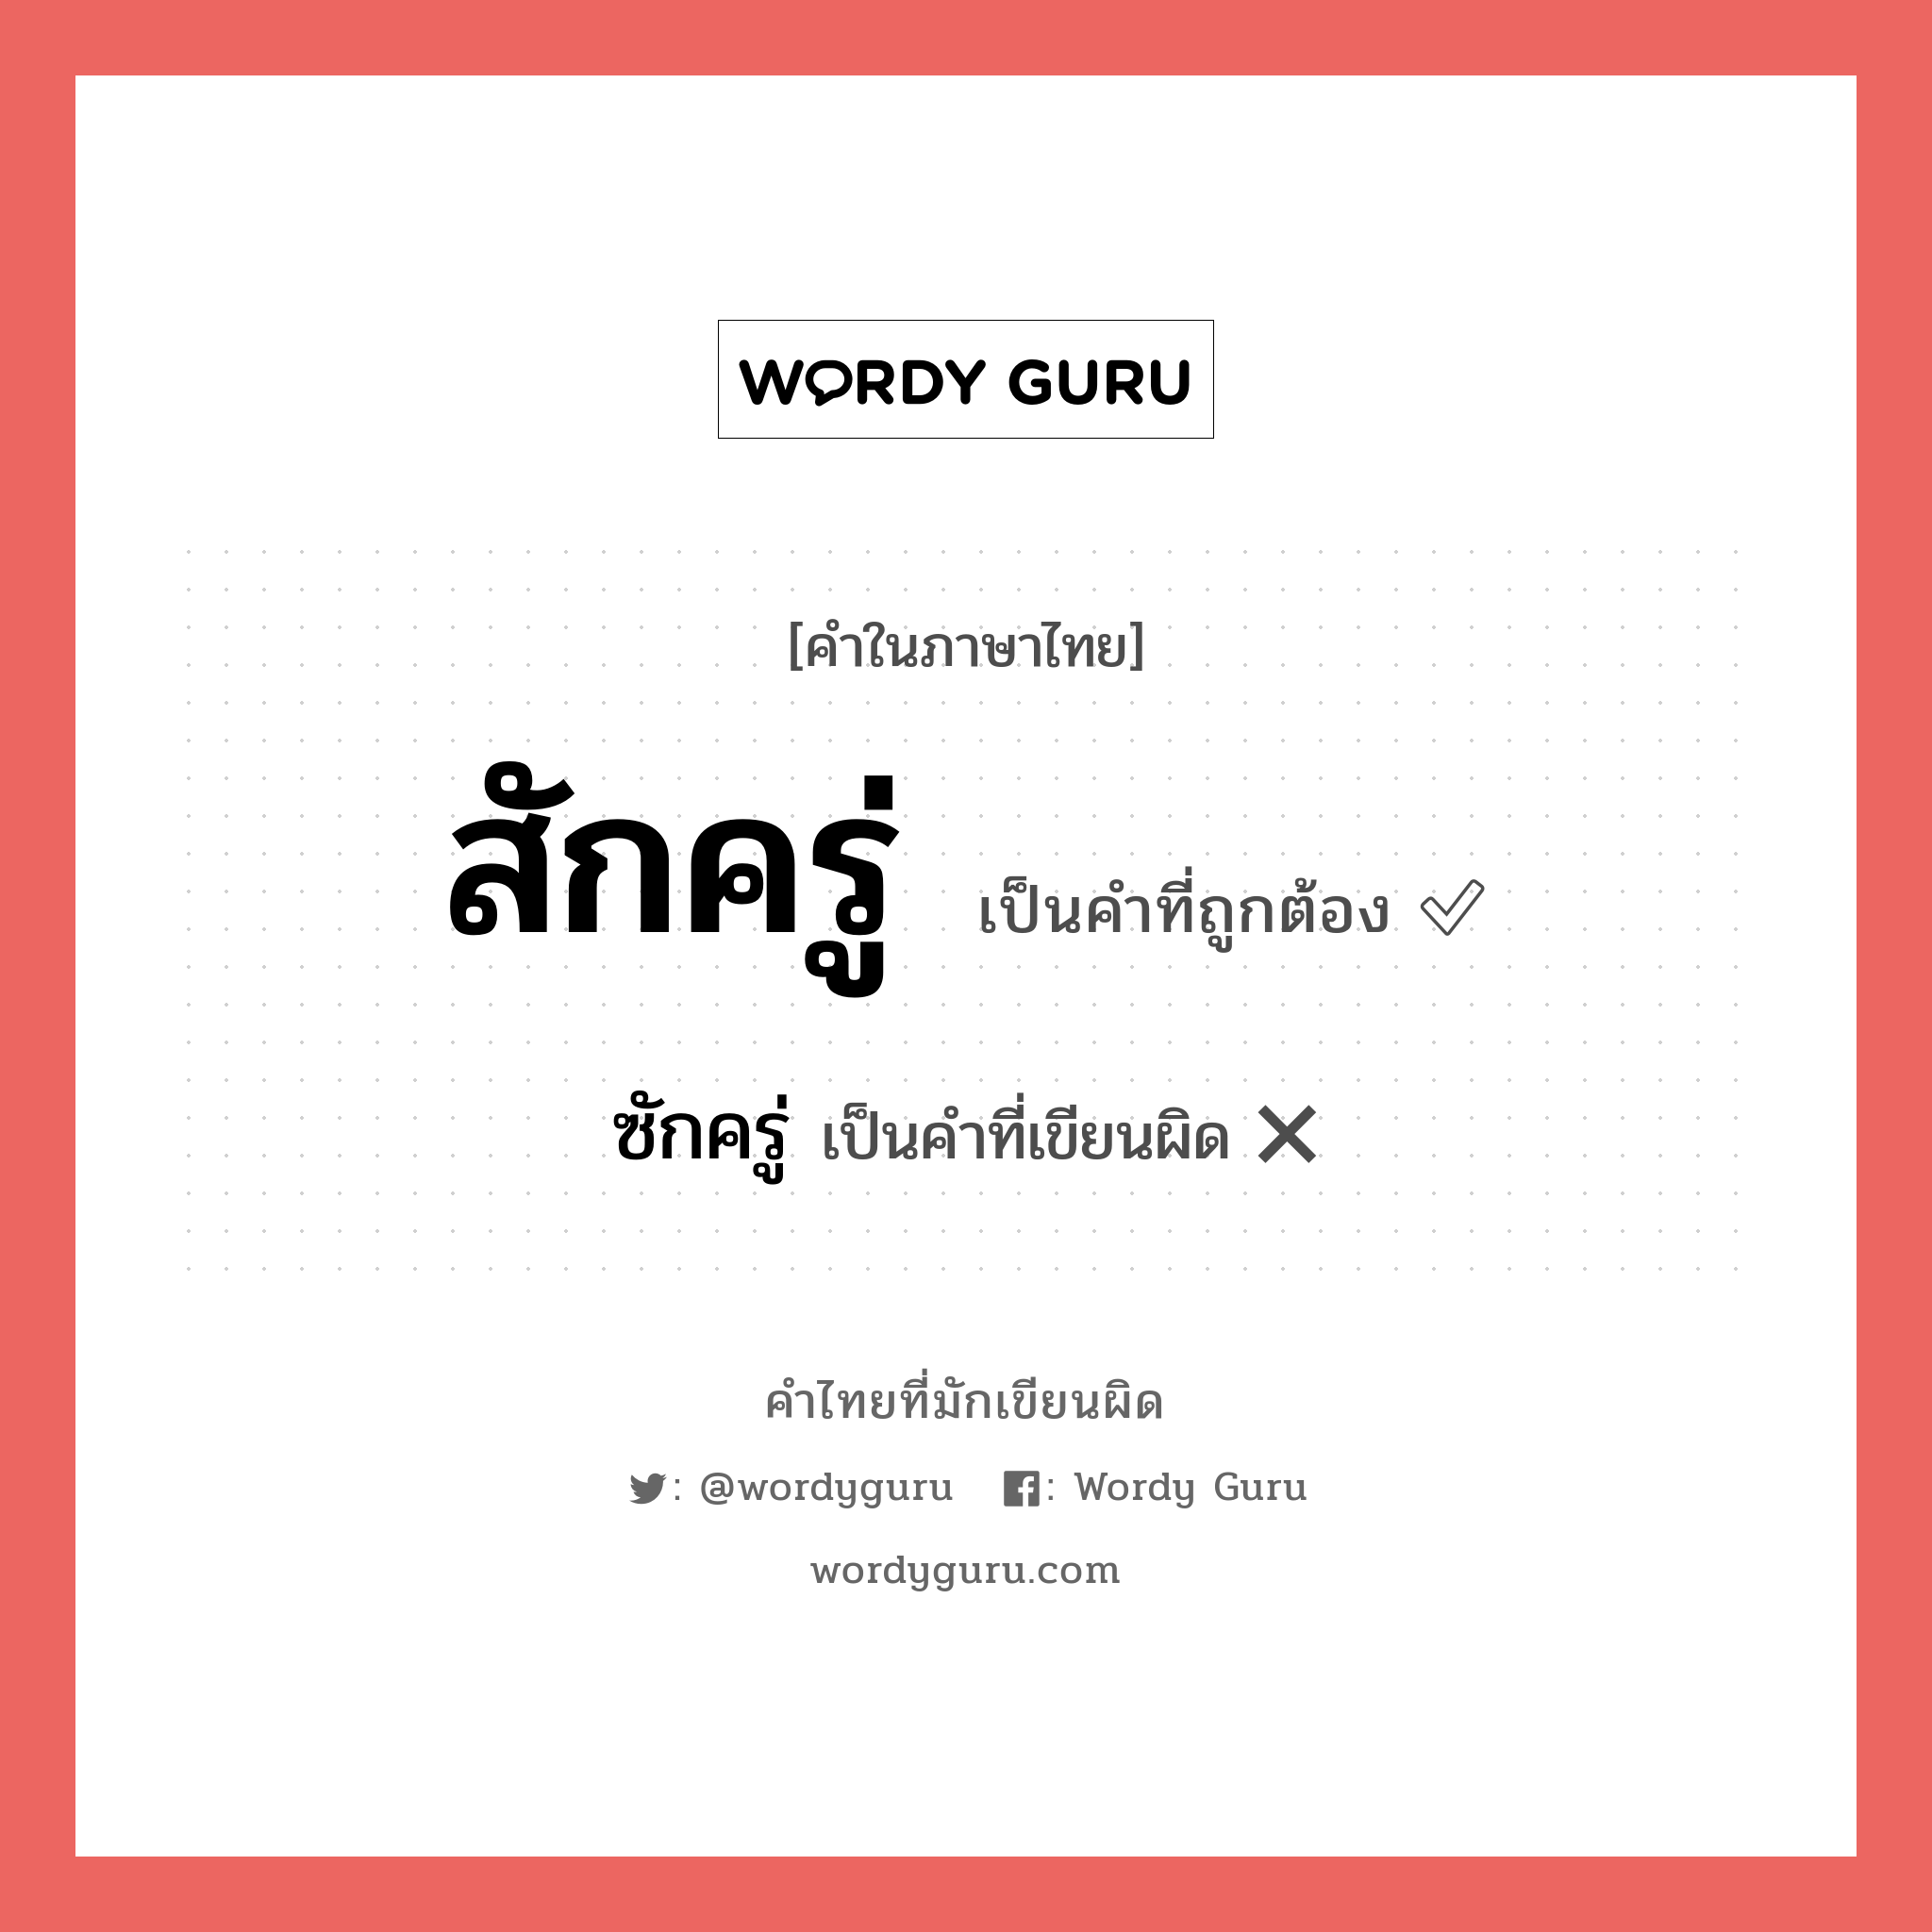 สักครู่ หรือ ซักครู่ คำไหนเขียนถูก?, คำในภาษาไทยที่มักเขียนผิด สักครู่ คำที่ผิด ❌ ซักครู่